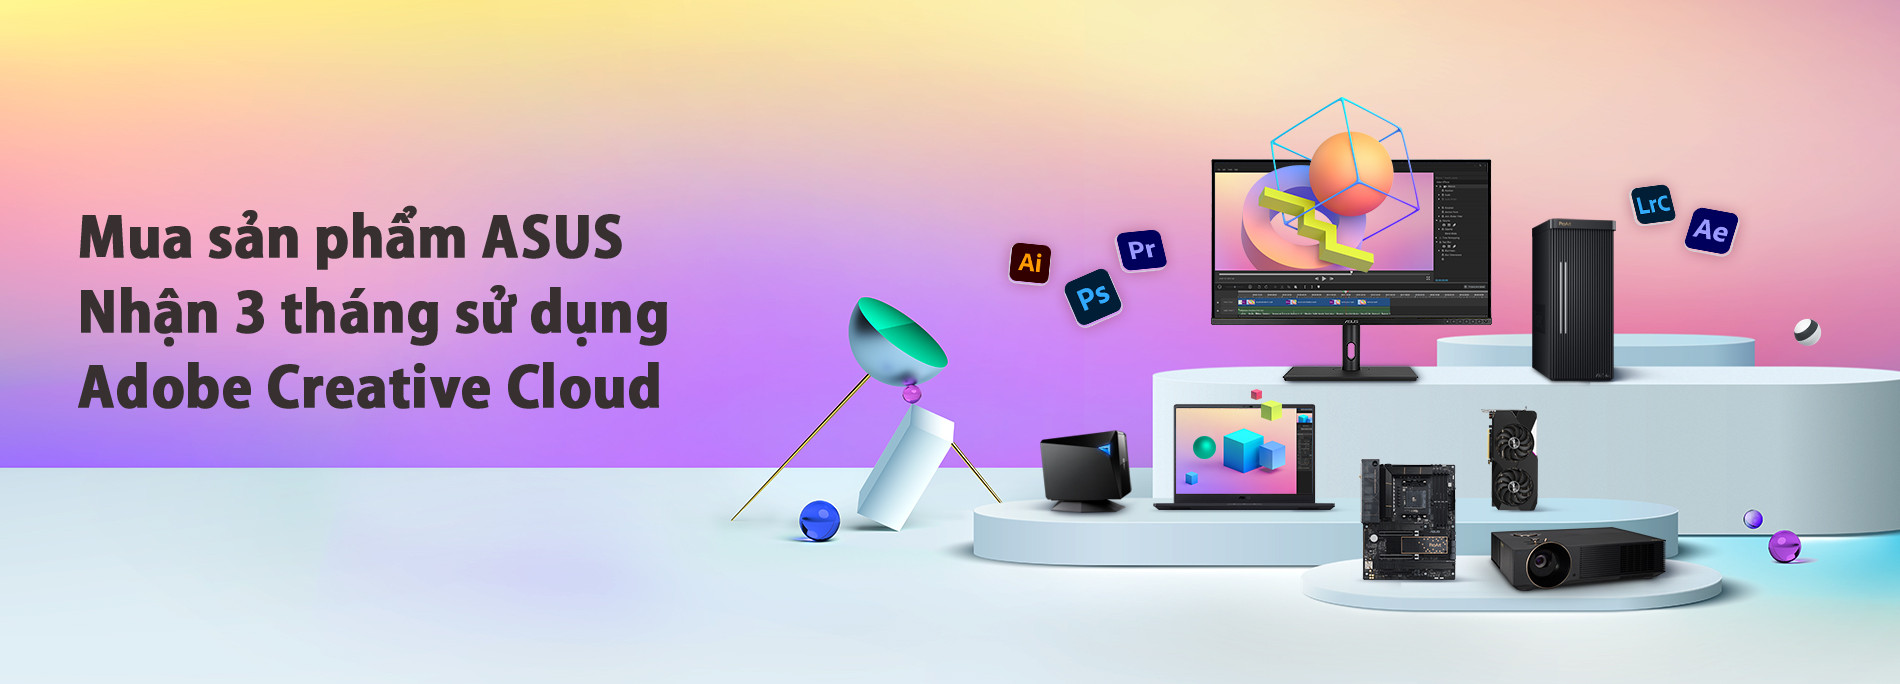 Mua màn hình máy tính Asus tặng gói Adobe Creative Cloud